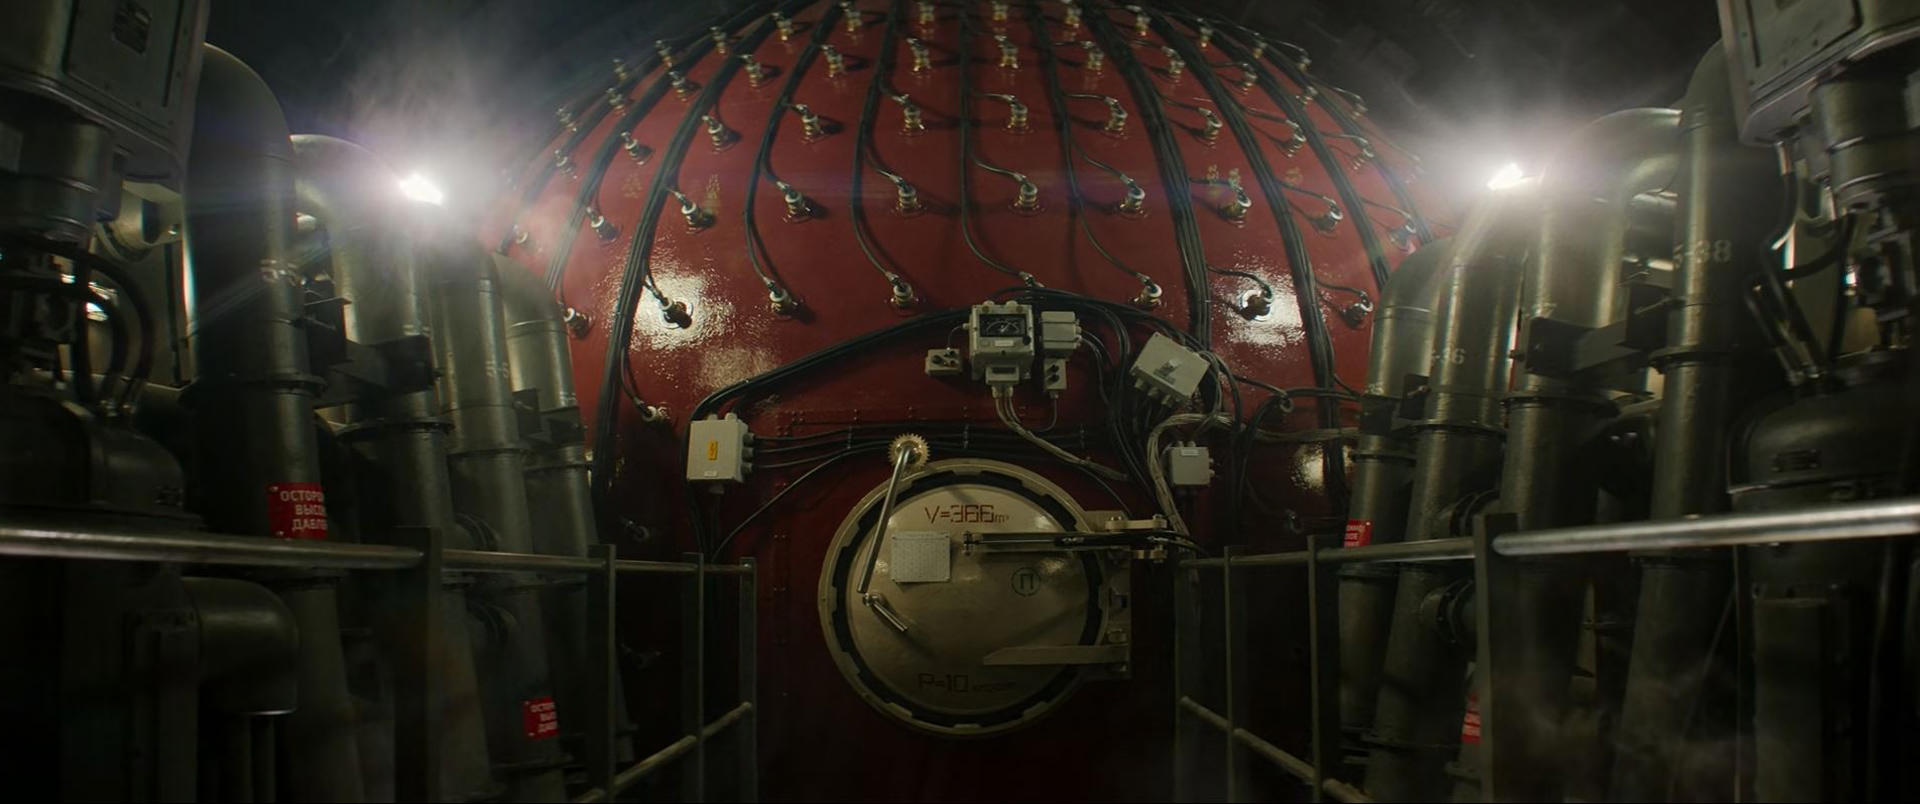 کُد منبع انتیتی در زیردریایی فیلم ماموریت غیرممکن ۷